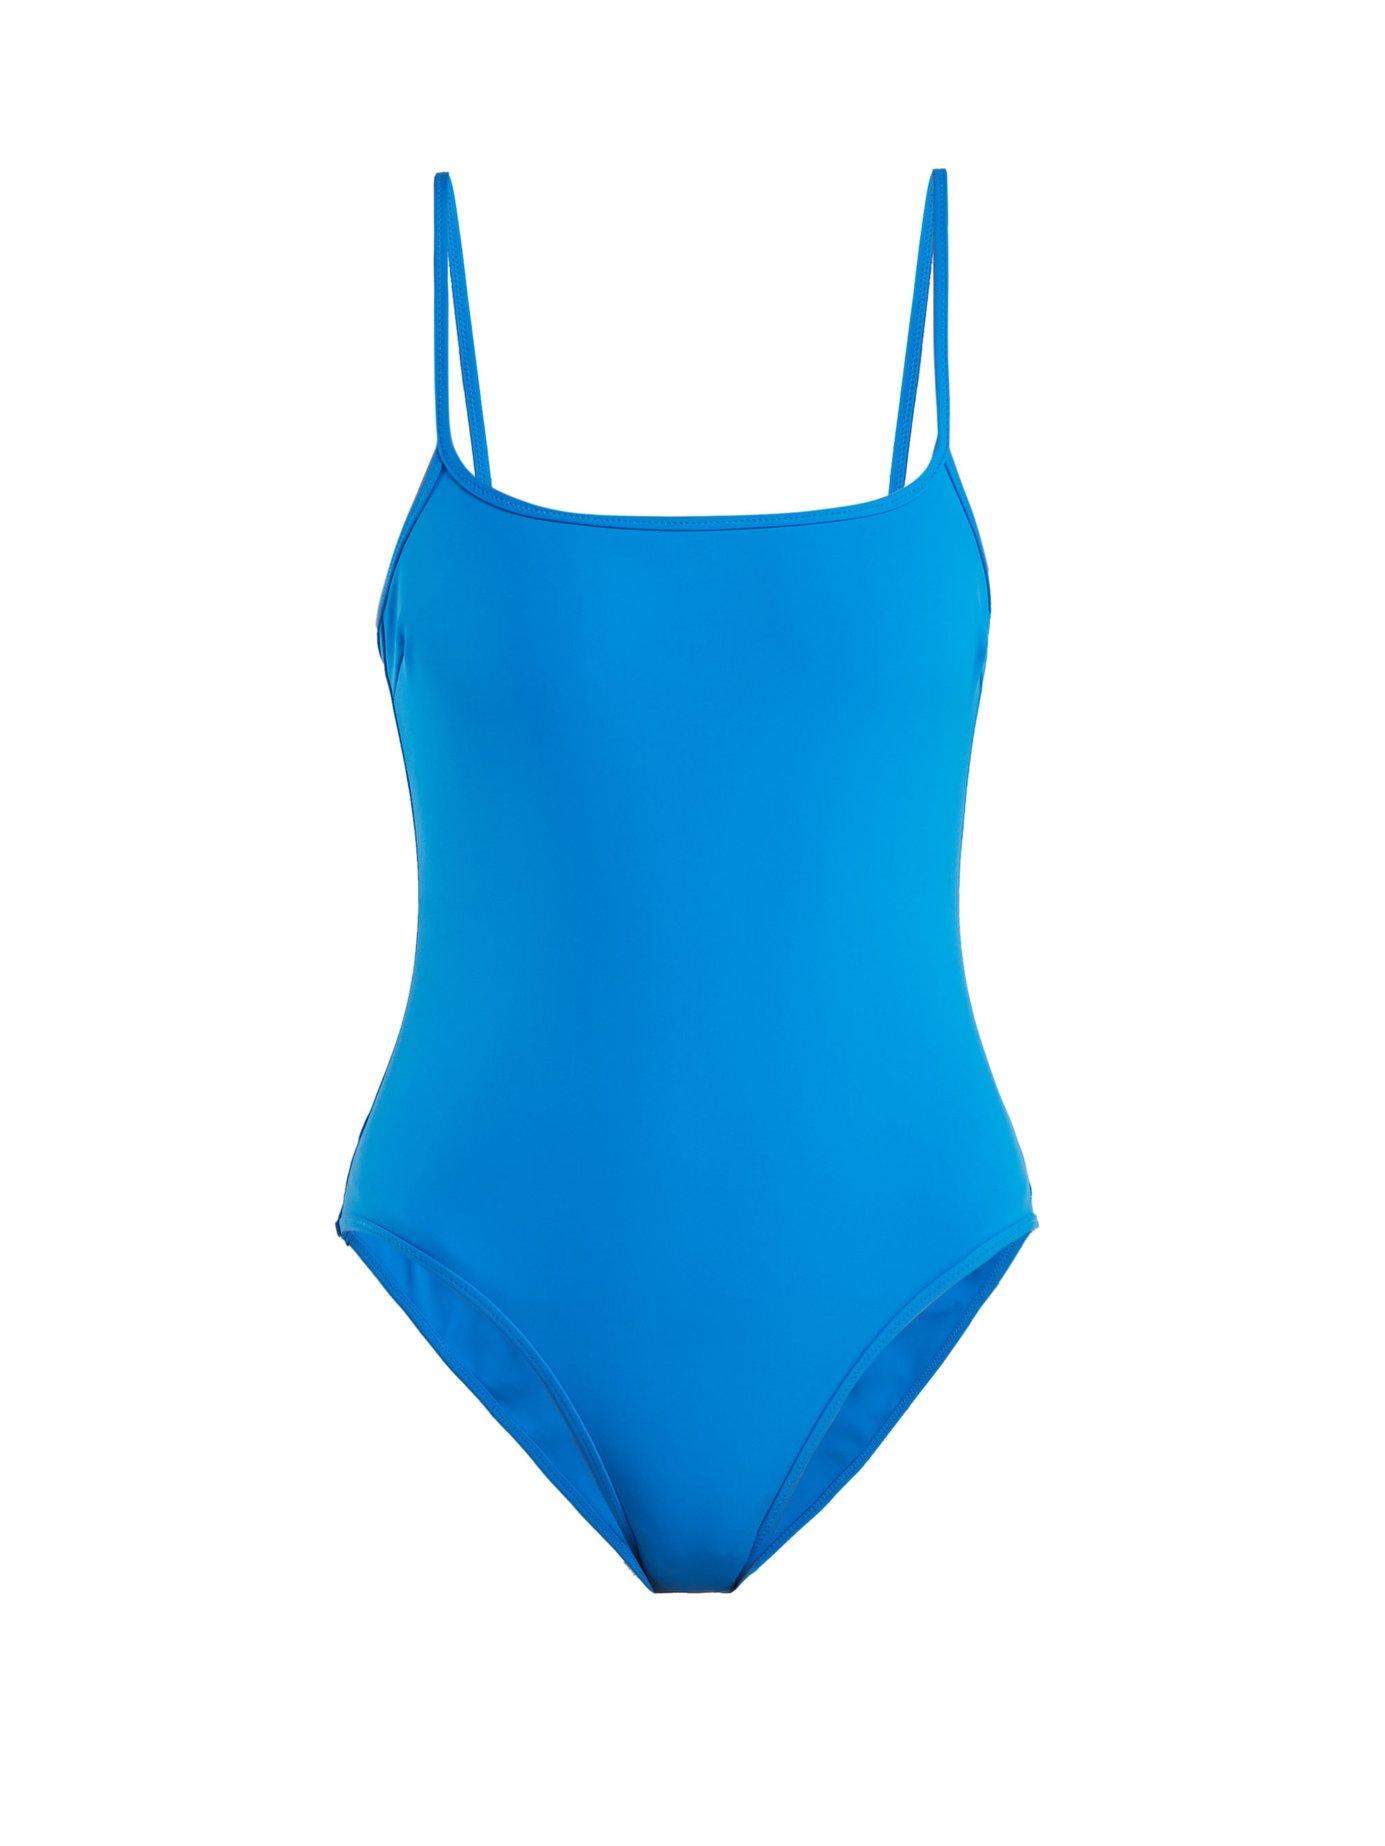 Rochelle Sara The Trevor Swimsuit In Light Blue | ModeSens